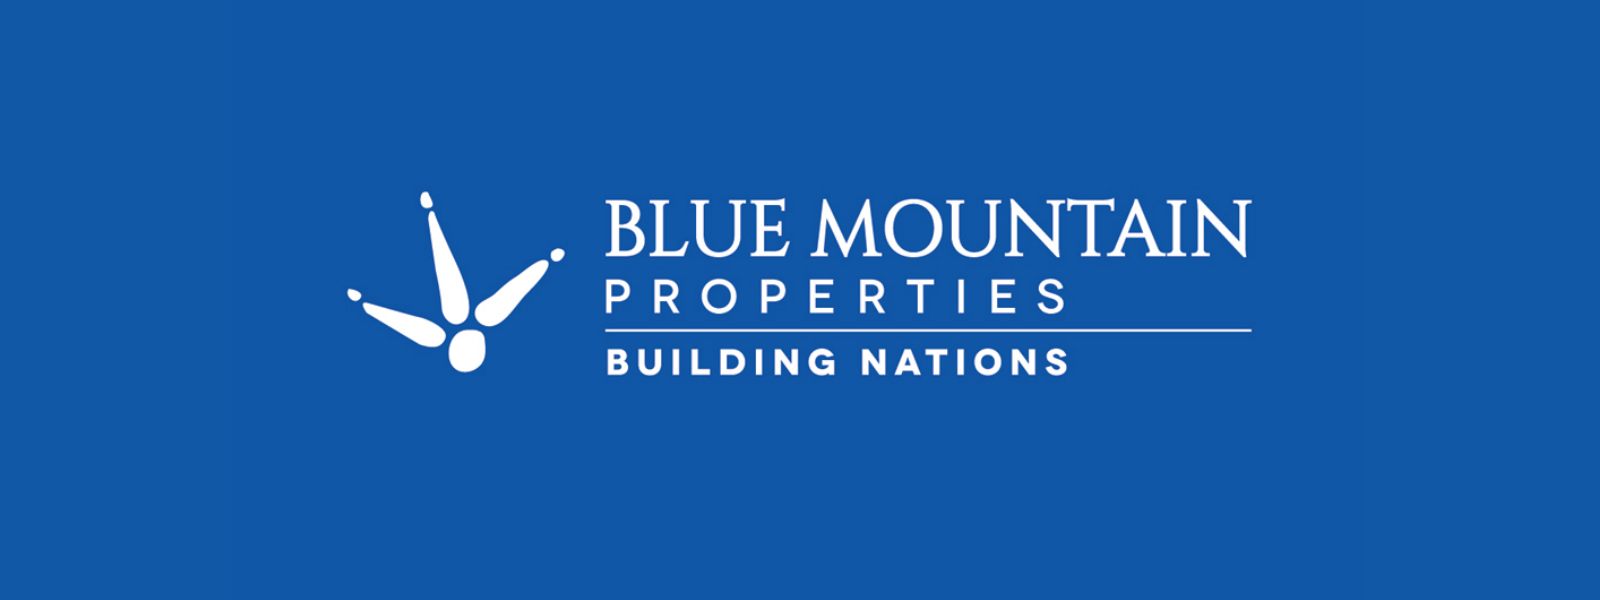 Blue Mountain issues fraudulent deeds